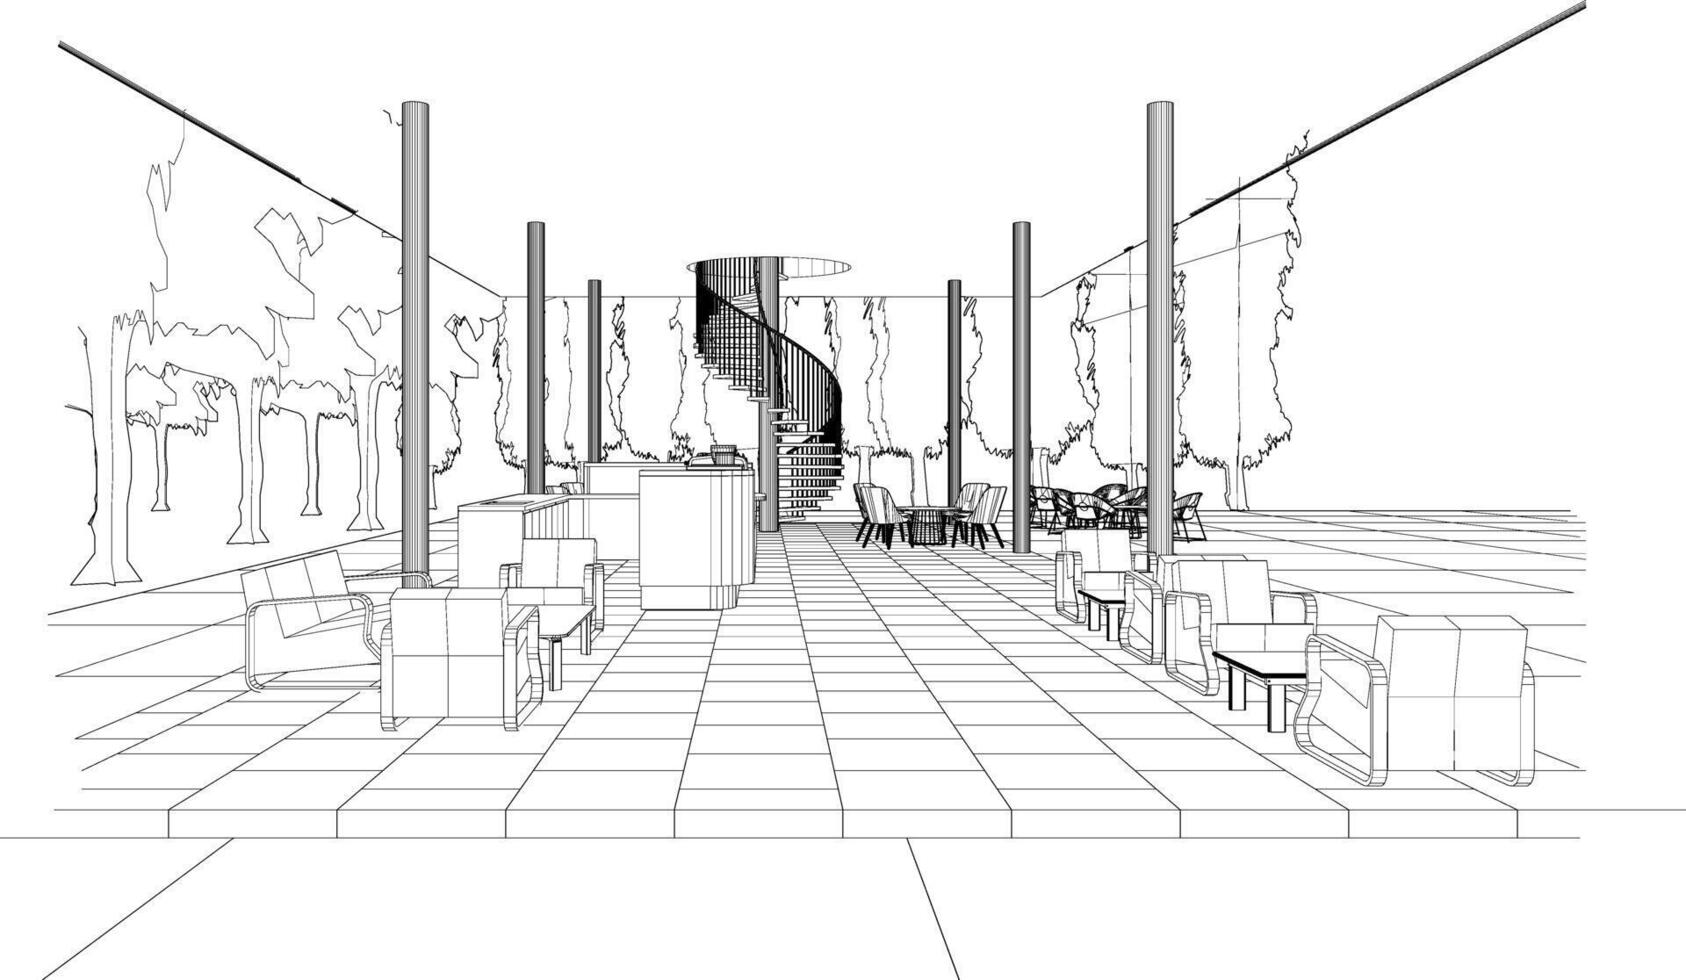 3d, illustration, de, café-restaurant vecteur